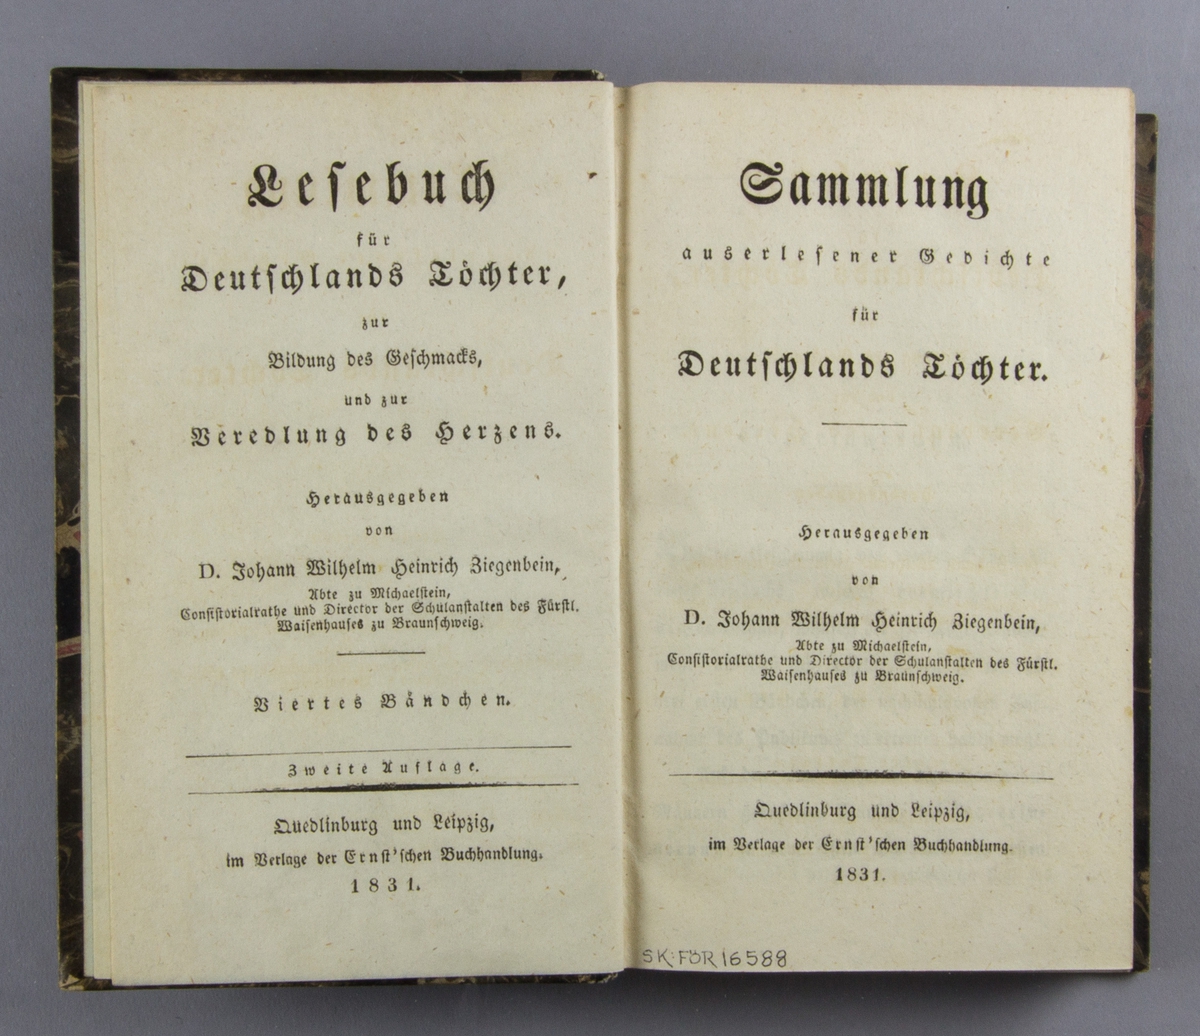 Bok: "Lesebuch für Deutschlands Tochter... " skriven av Johann Wilhelm Heinrich Ziegenbein och tryckt hos Verlag der Ernst'schen Buchhandlung i Quedlinburg och Leipzig 1831. 

Bandet med svart guldornerad rygg och orange titeletikett. Pärmen klädd i marmorerat svart, vitt och rosa papper.